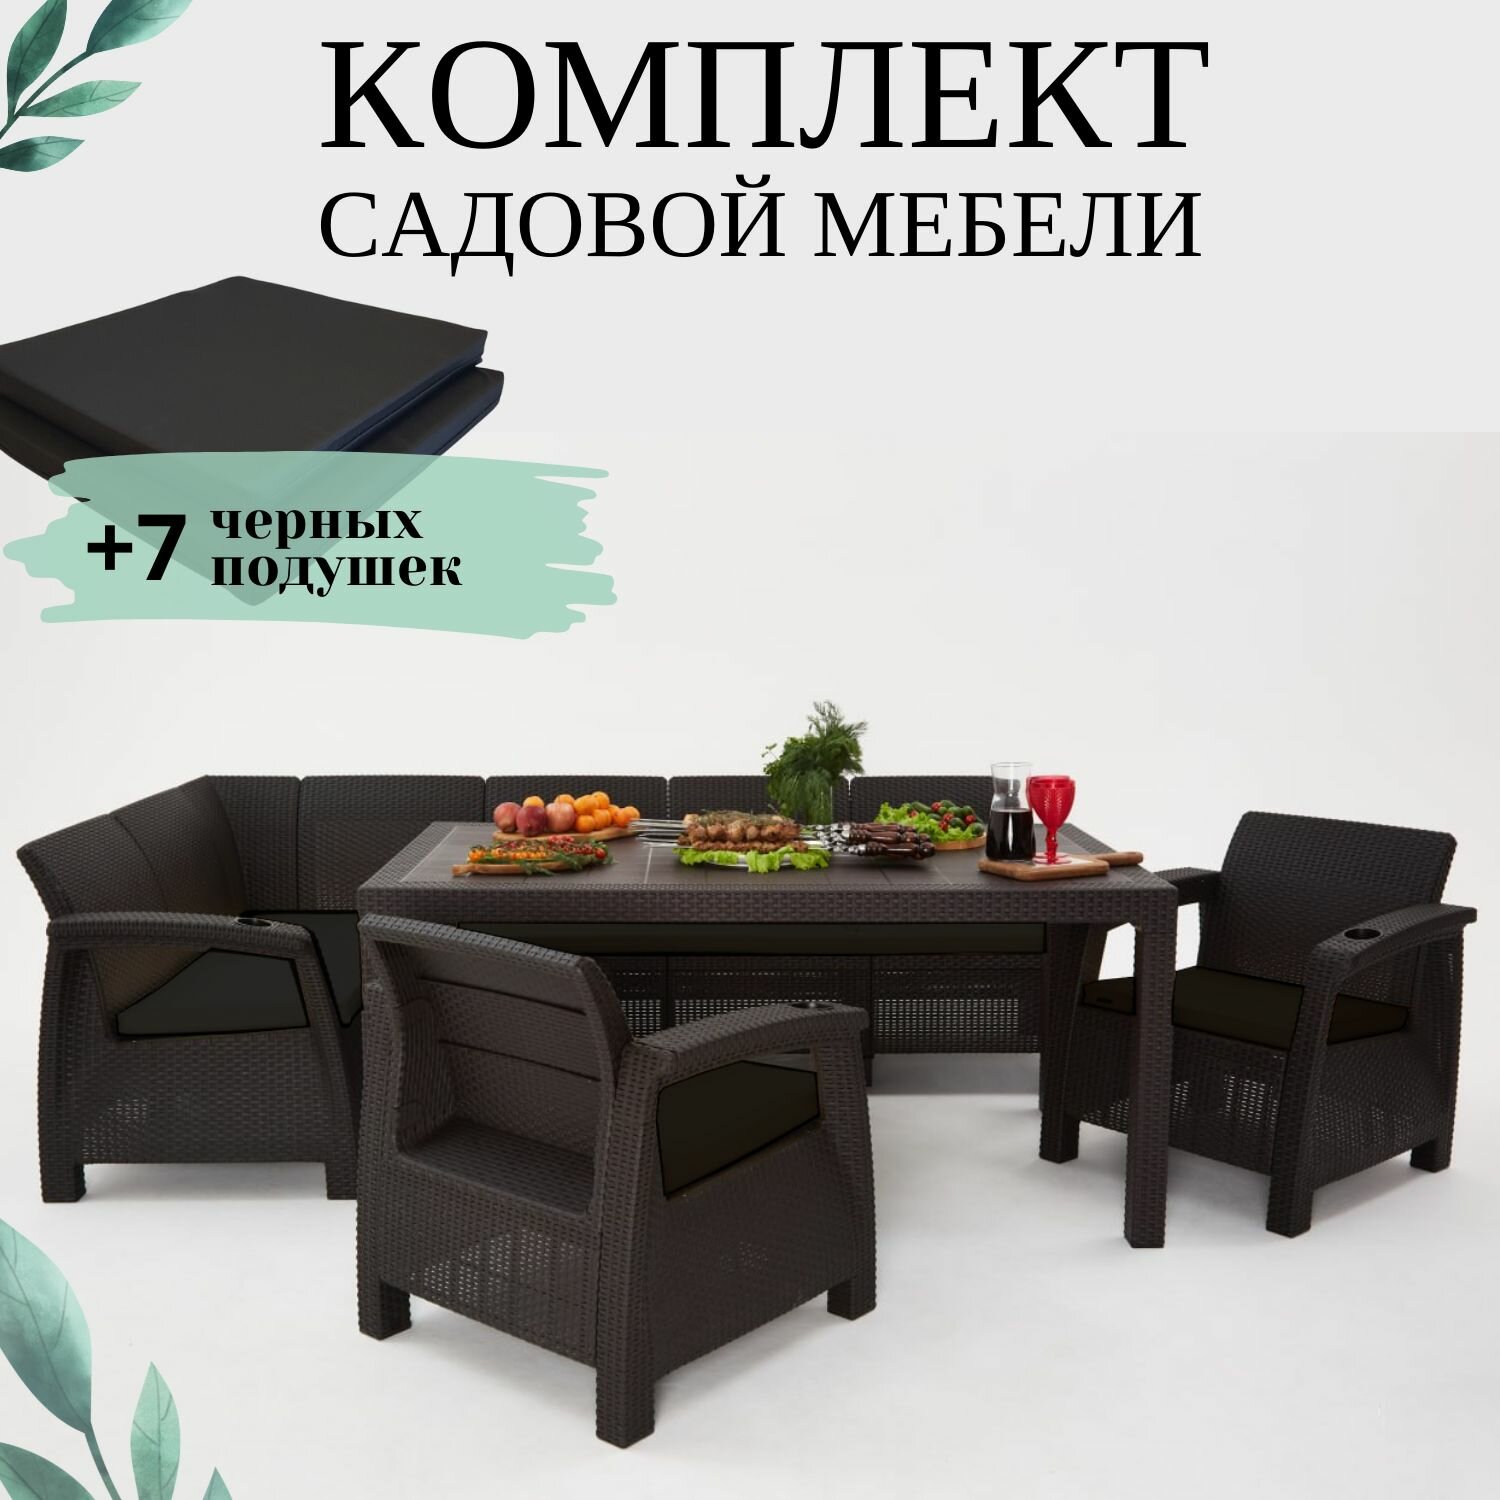 Комплект садовой мебели из ротанга Set 5+Bt+1+1 черные подушки